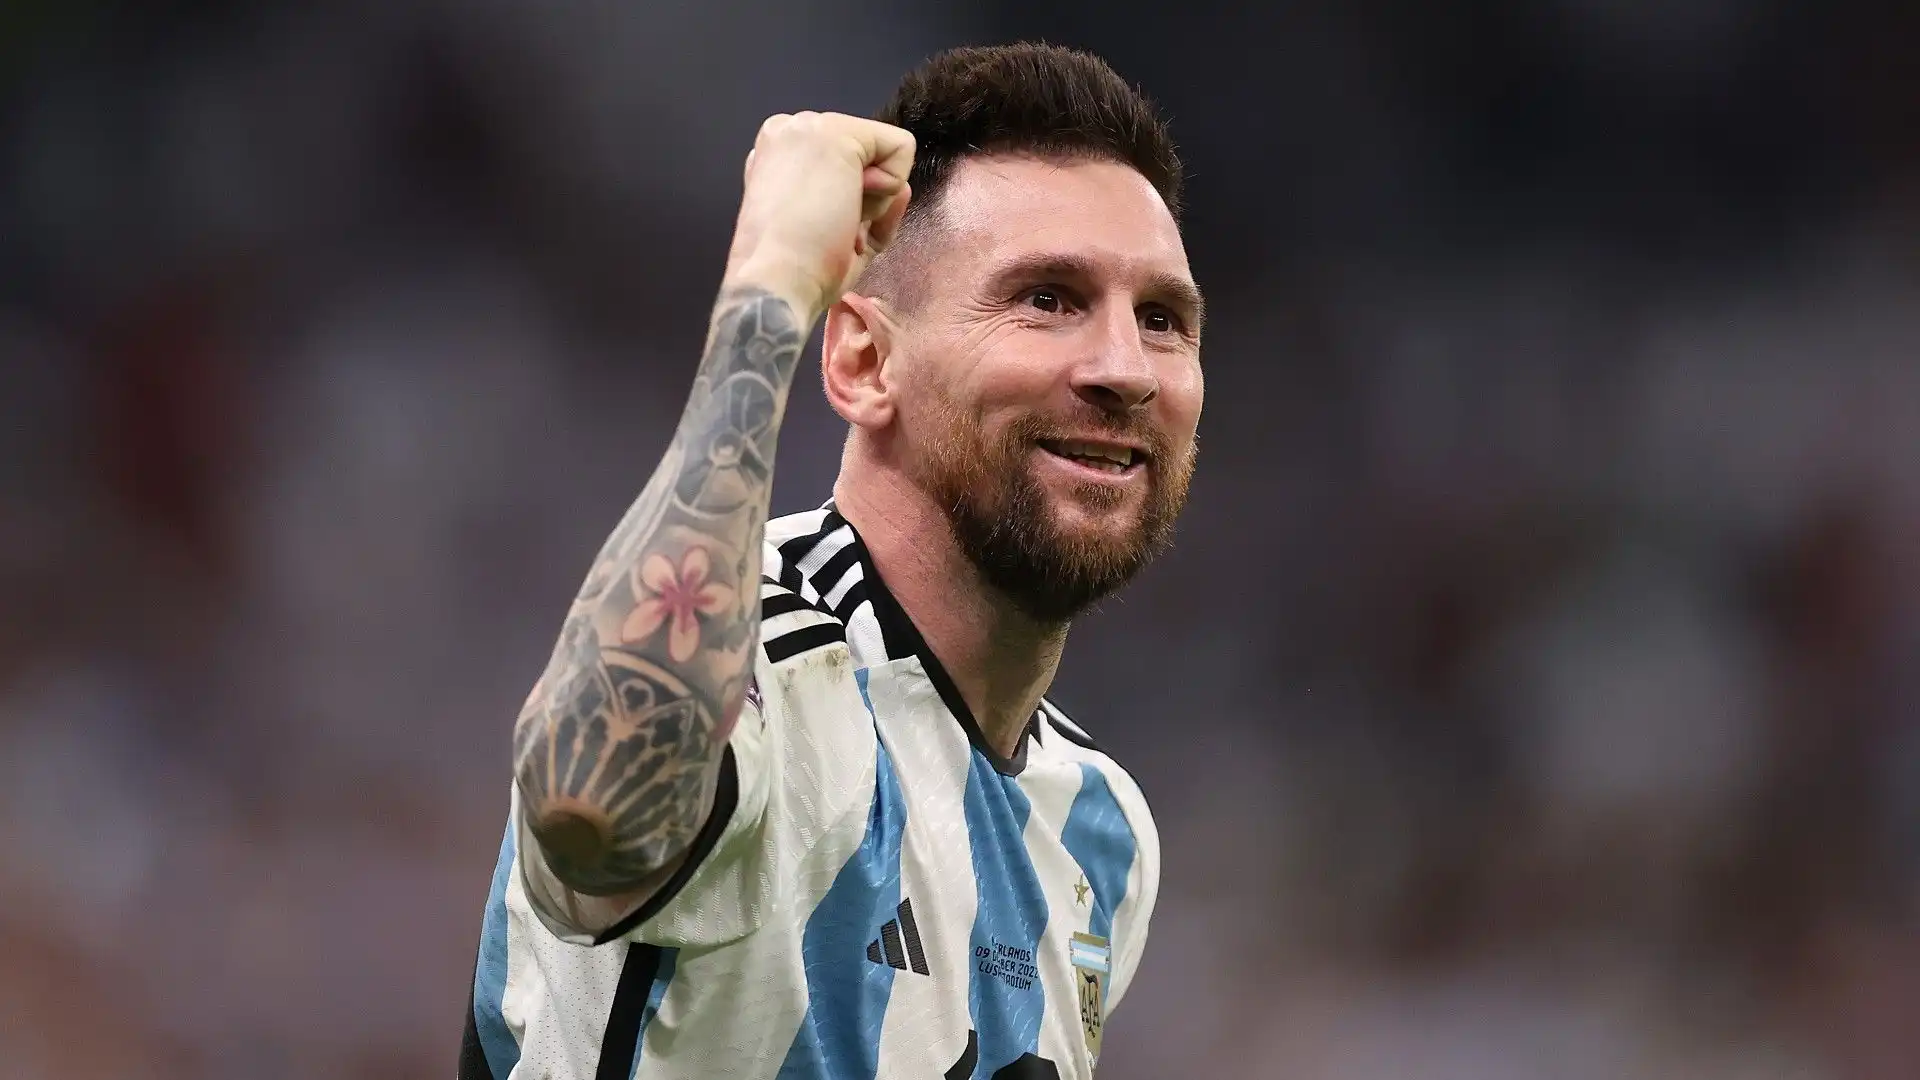 Lionel Messi: per alcuni appassionati di calcio è il calciatore più forte nella storia del calcio insieme a Maradona. A dicembre ha vinto la Coppa del Mondo in Qatar